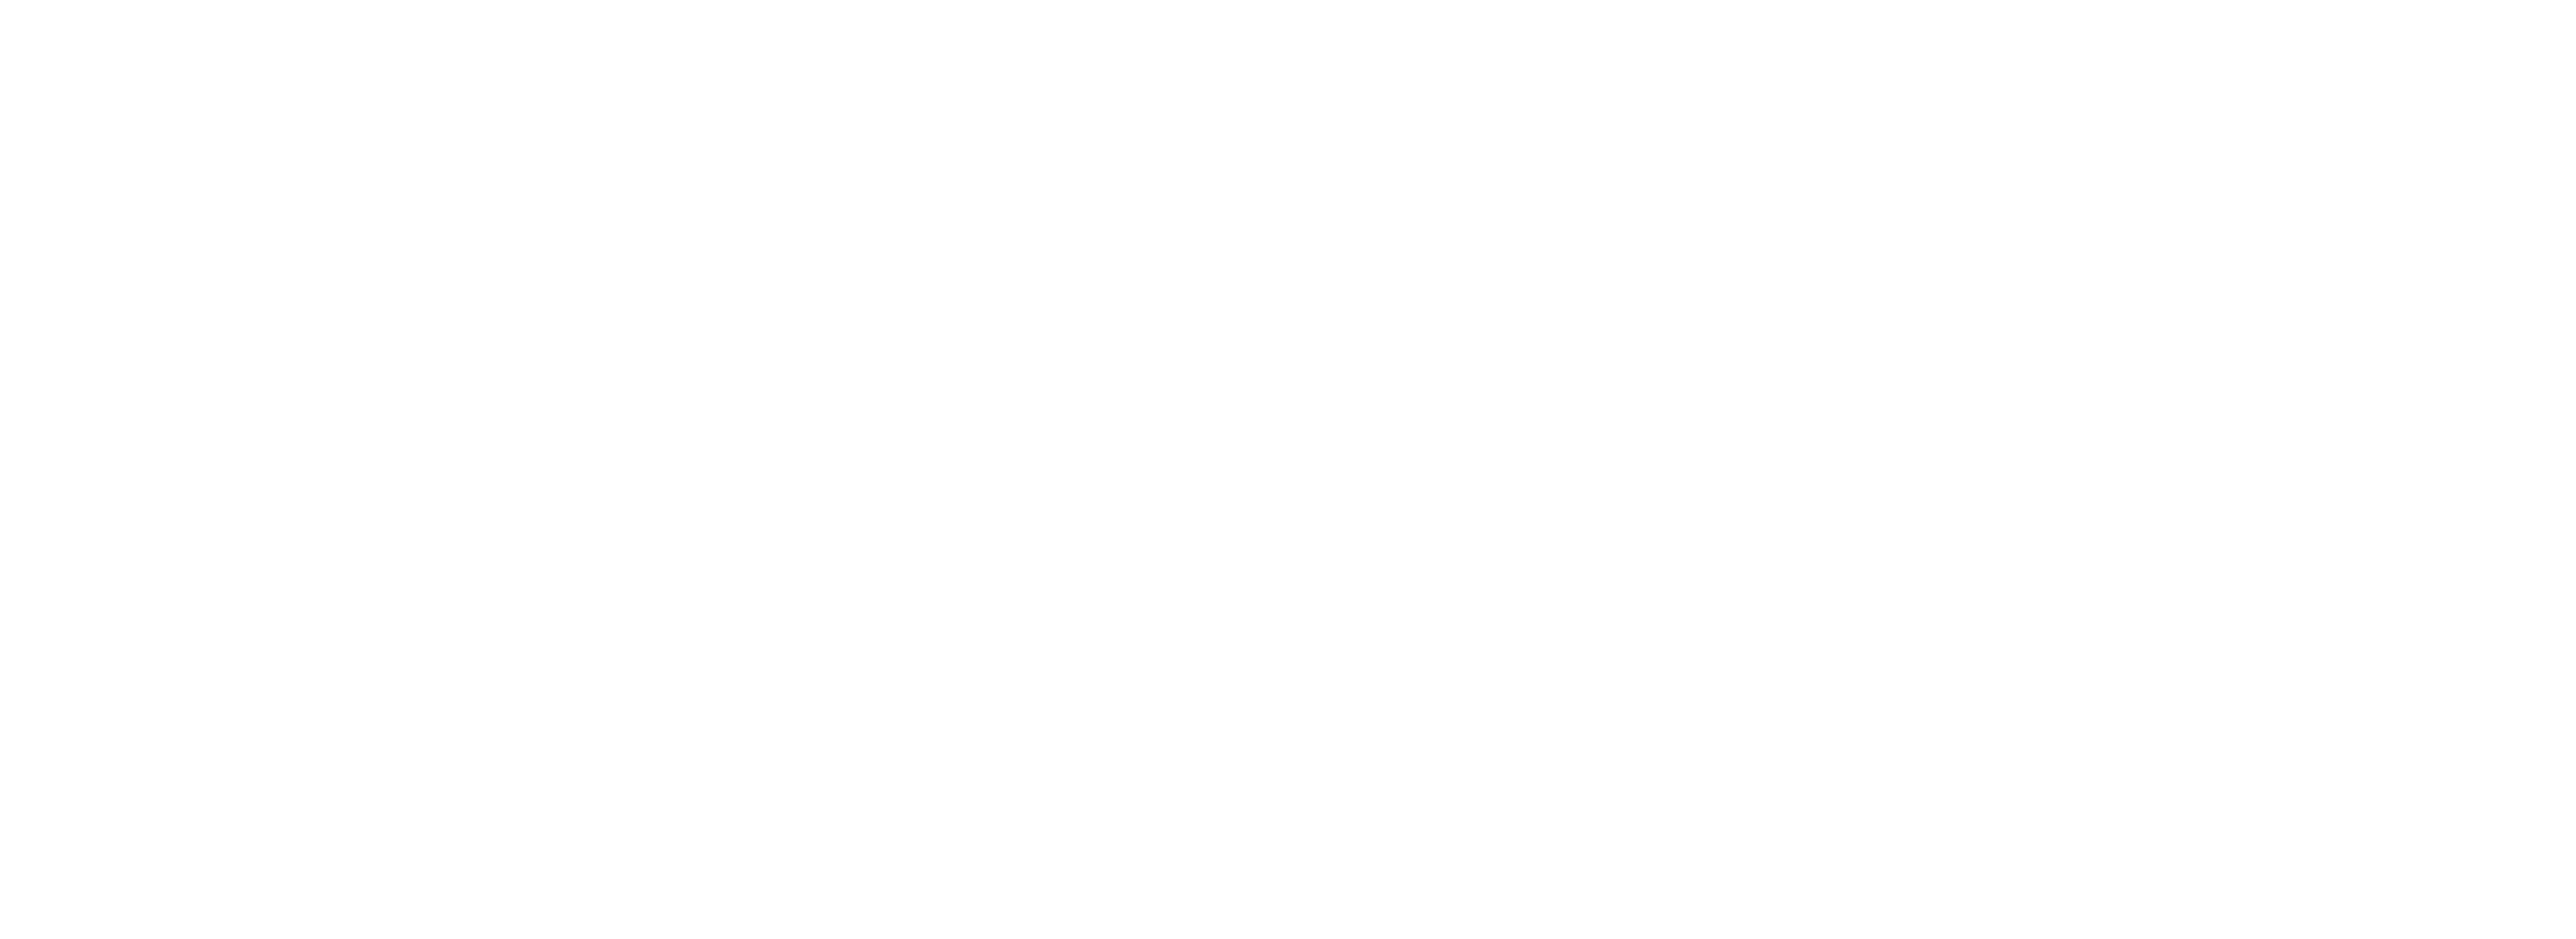 white cedia logo